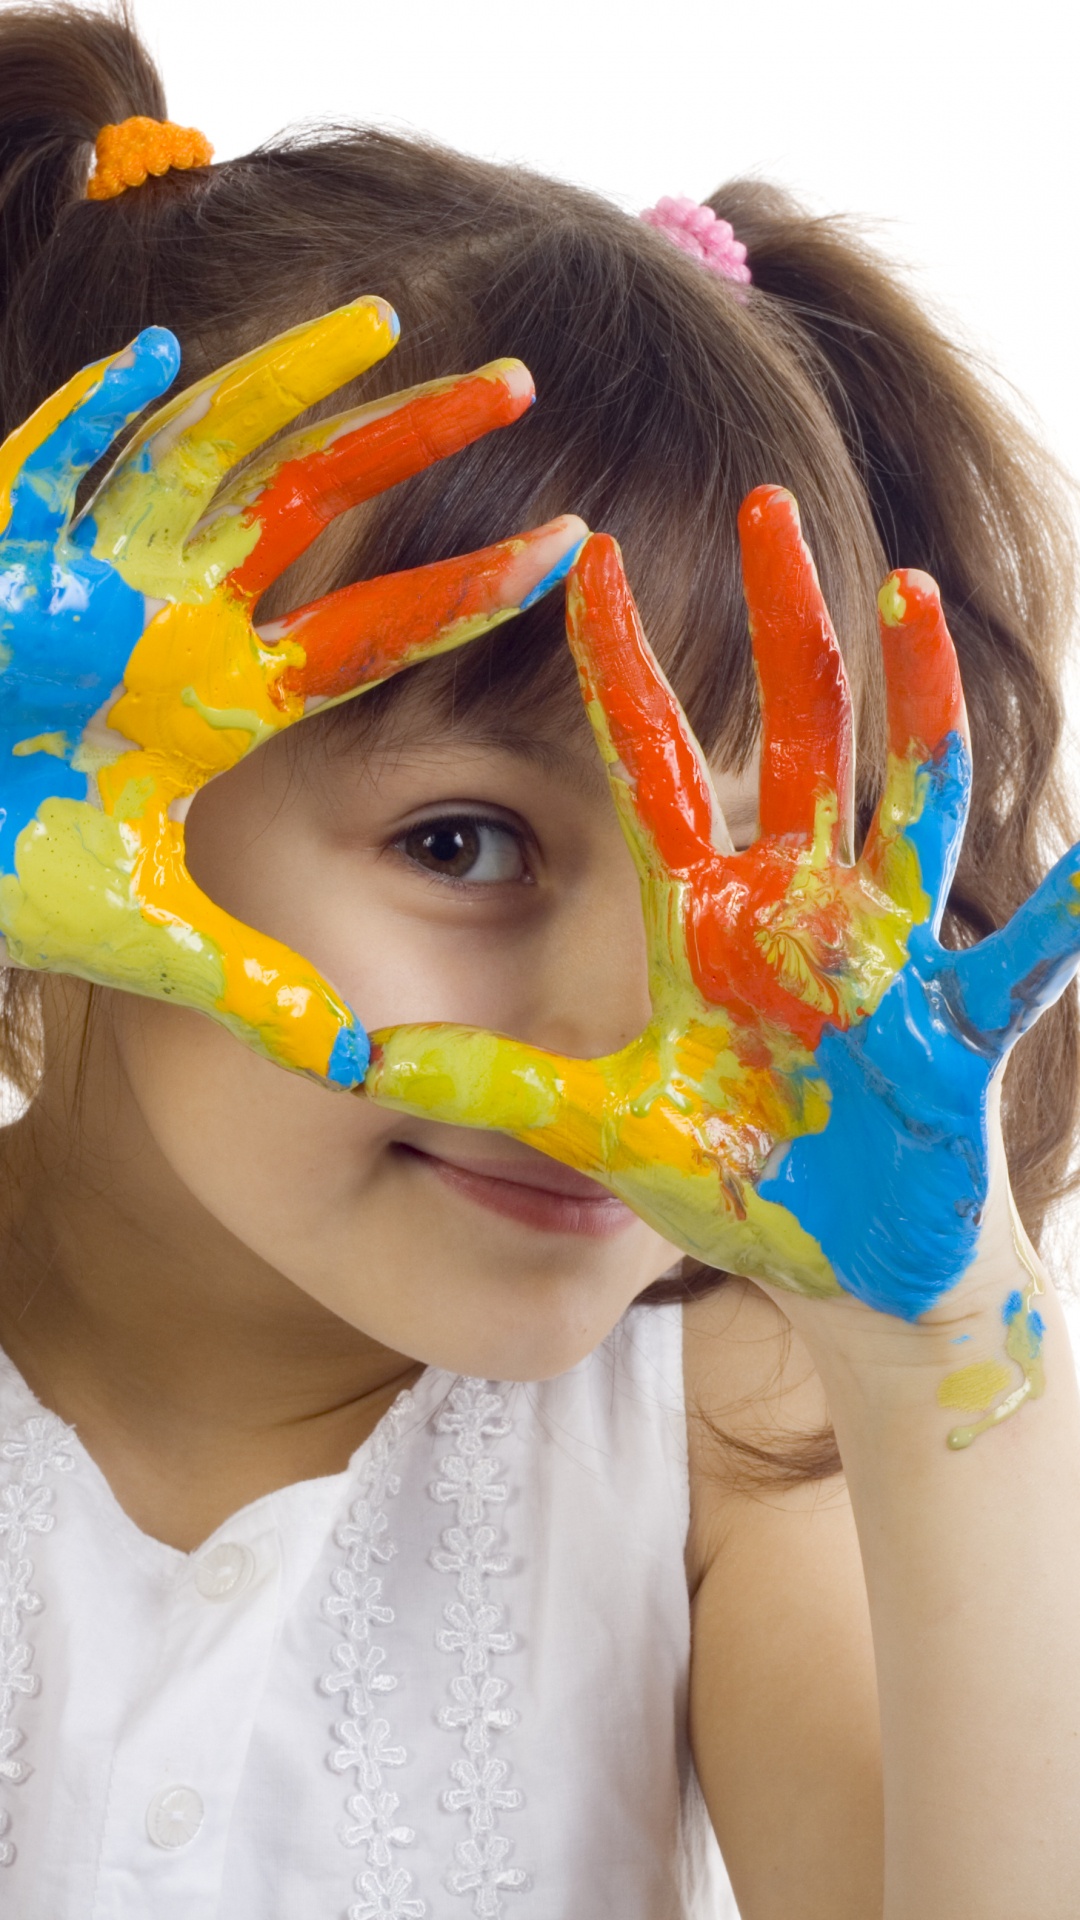 Farbe, Gesicht, Kopf, Kind, Ölmalerei. Wallpaper in 1080x1920 Resolution